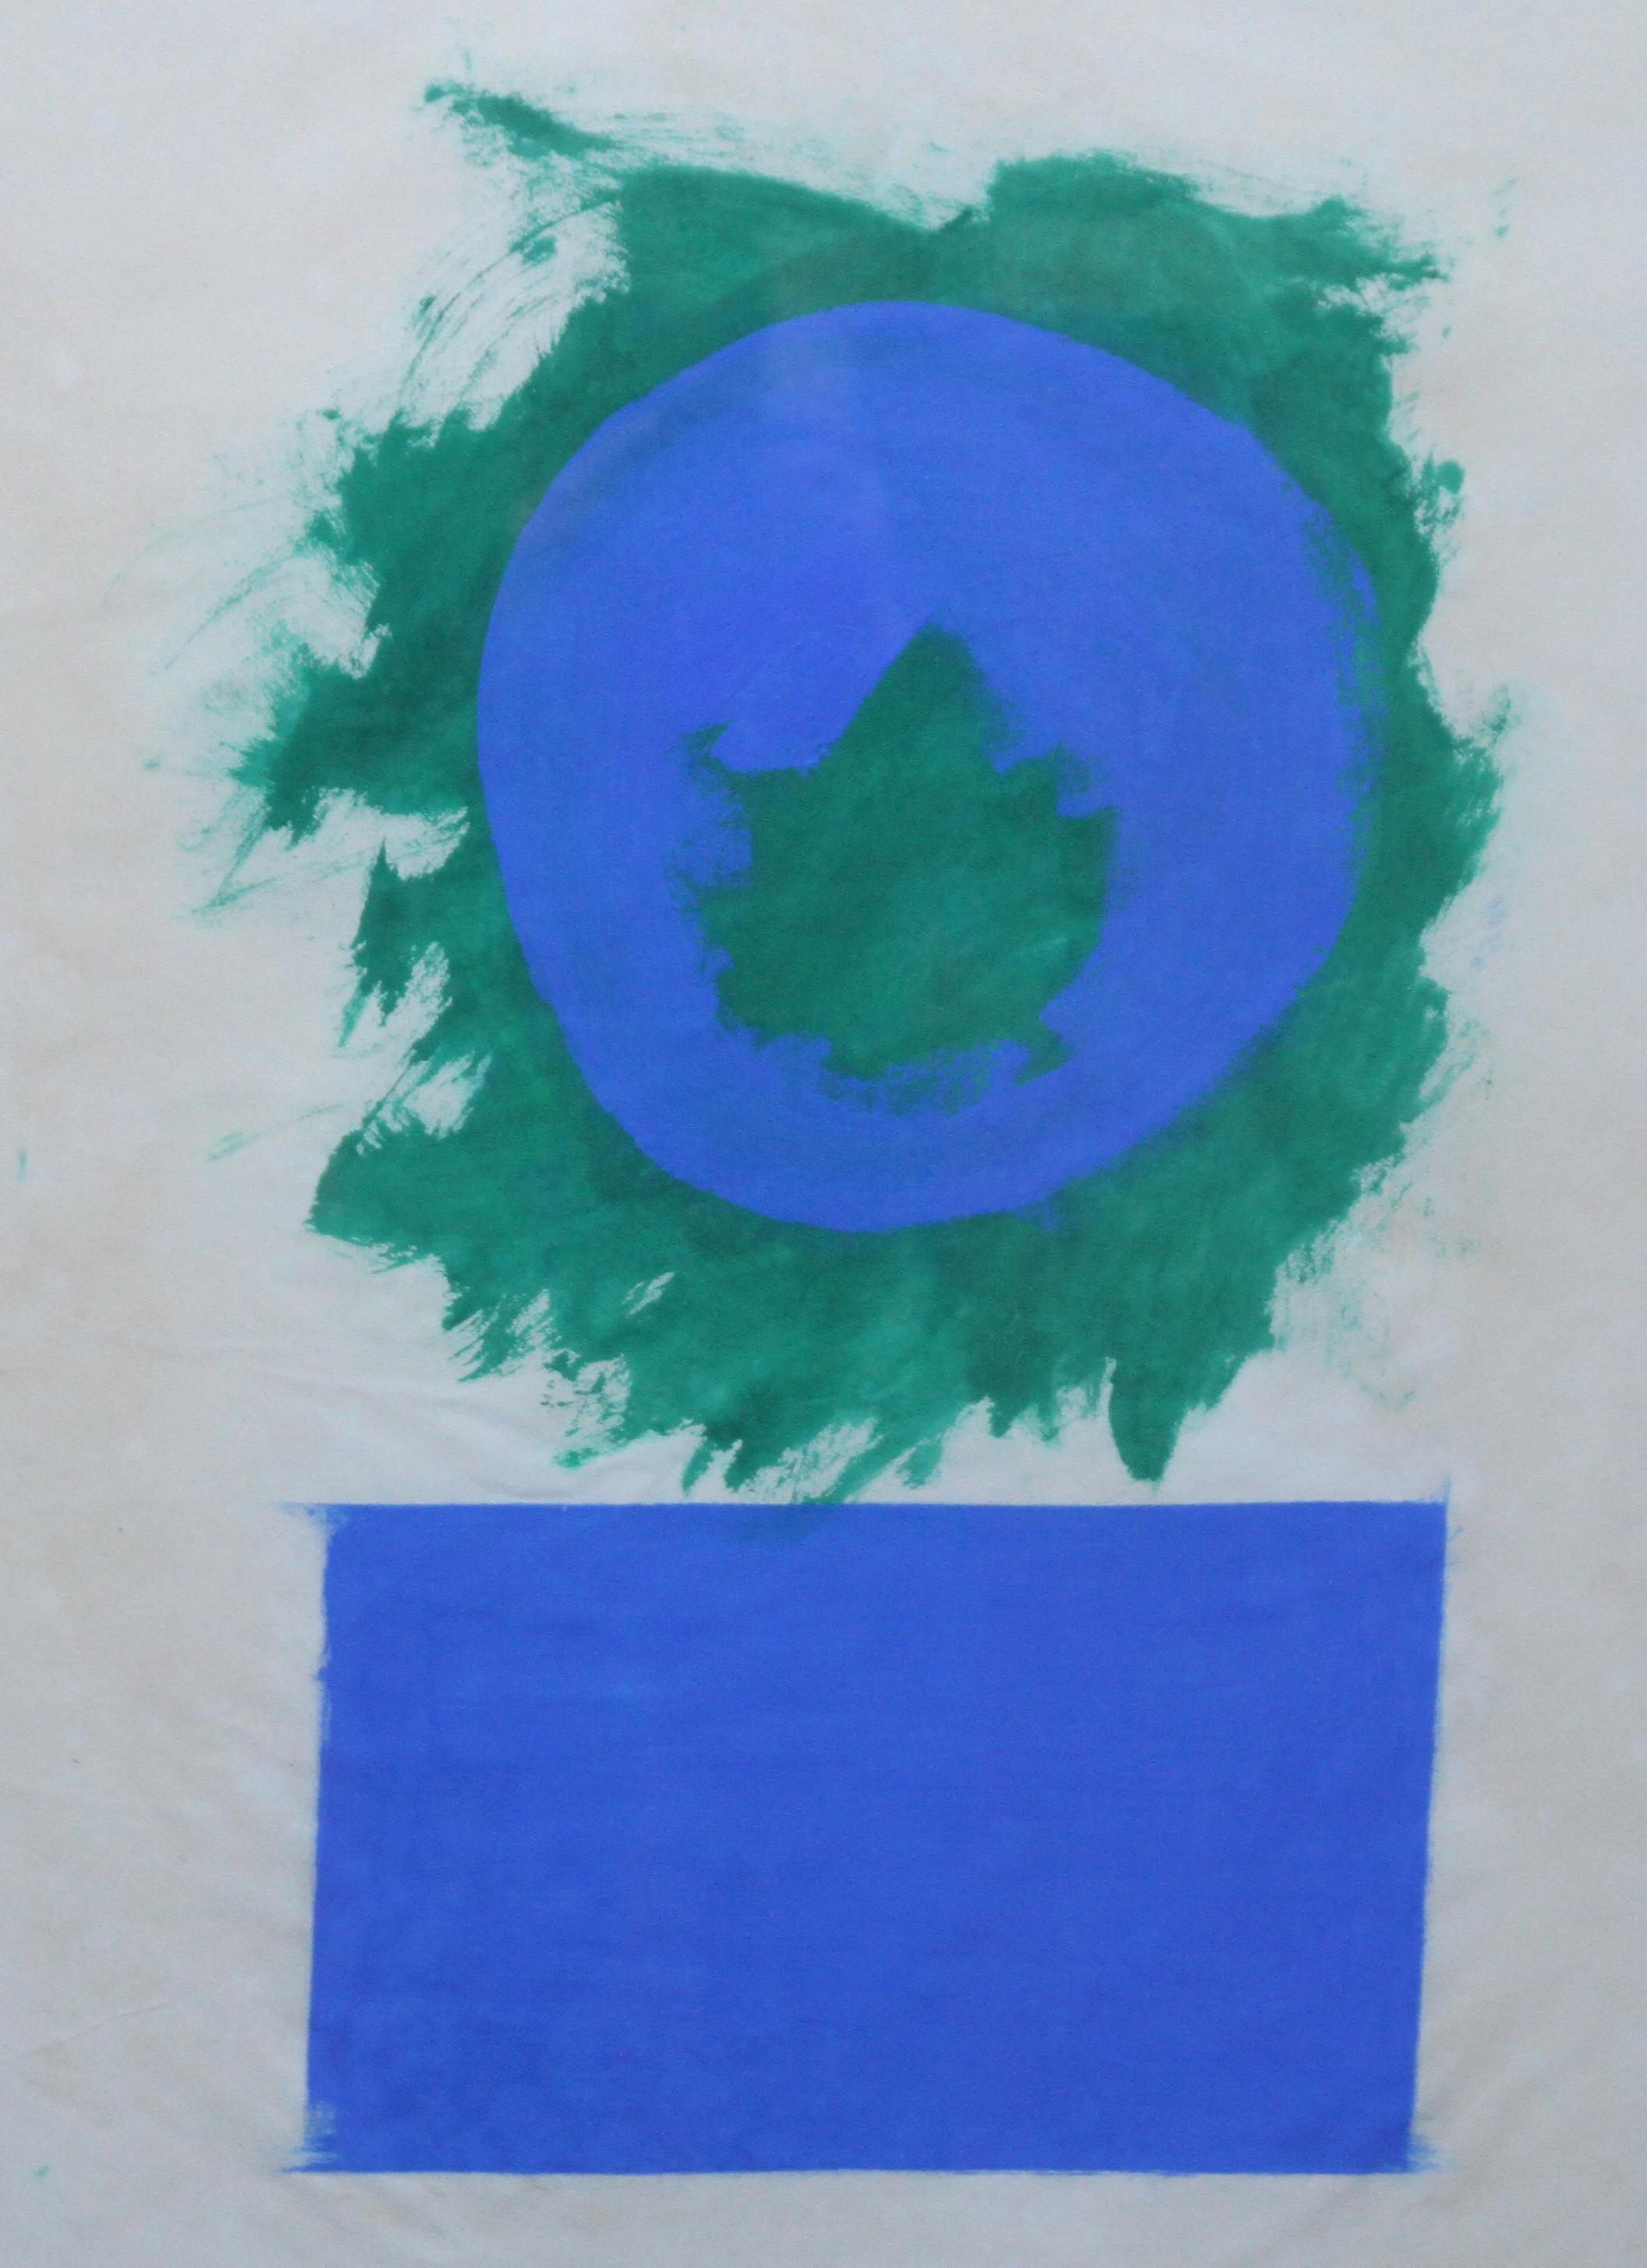 Blaue und grüne Formen – britisches abstraktes Ölgemälde in Papierfarbe aus den 50er Jahren (Abstrakt), Painting, von Robyn Denny